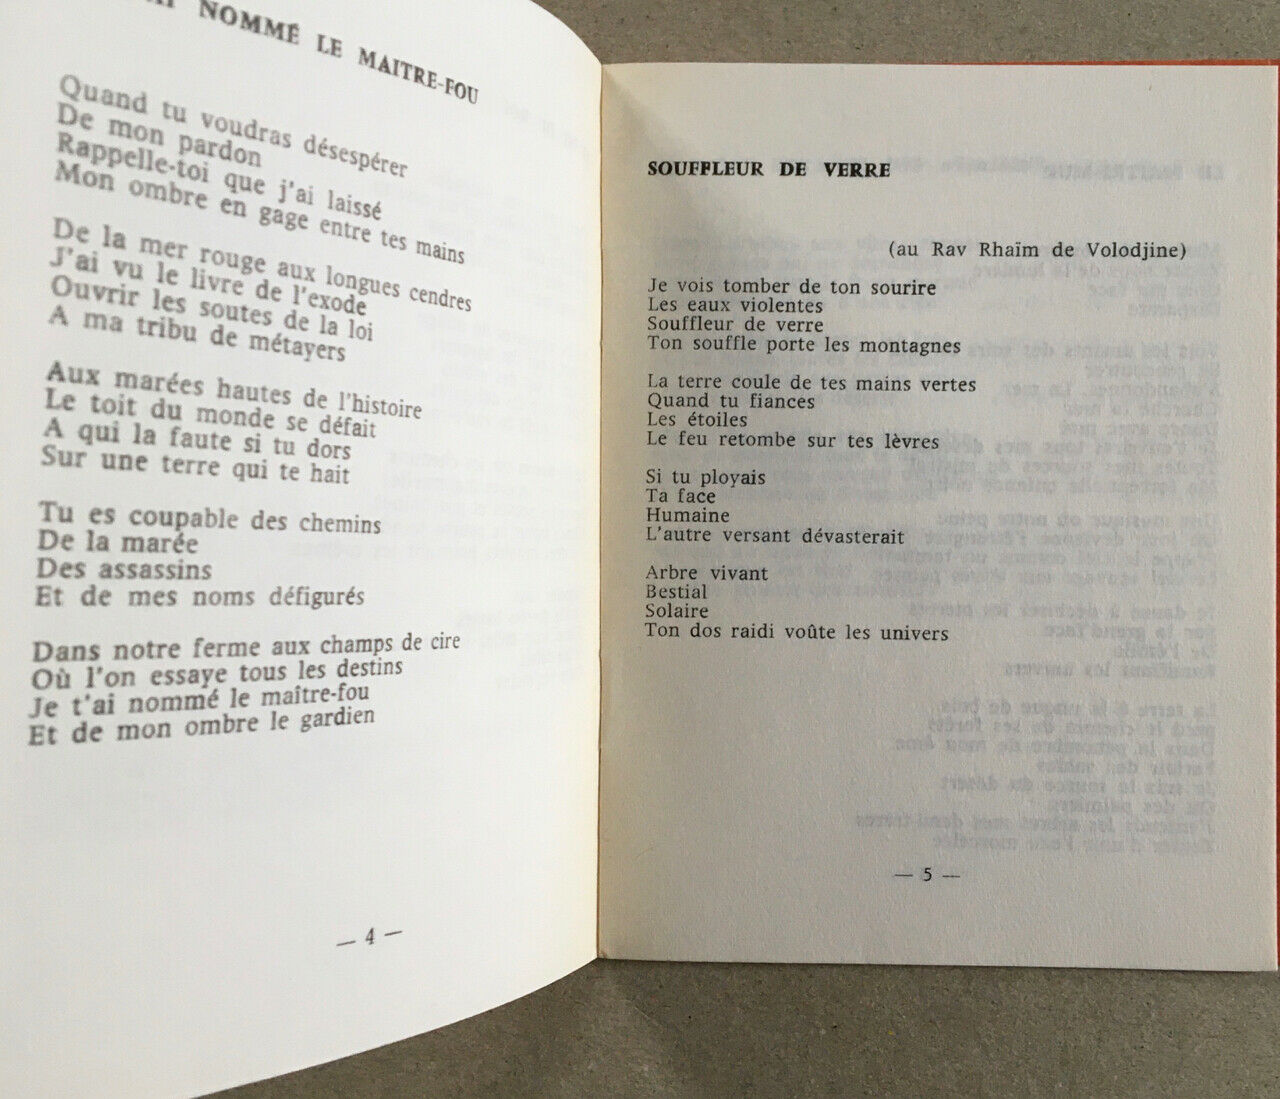 [Liliane Atlan] Galil — Le Maître-mur — Poetic action 18 — dispatch — 1964.